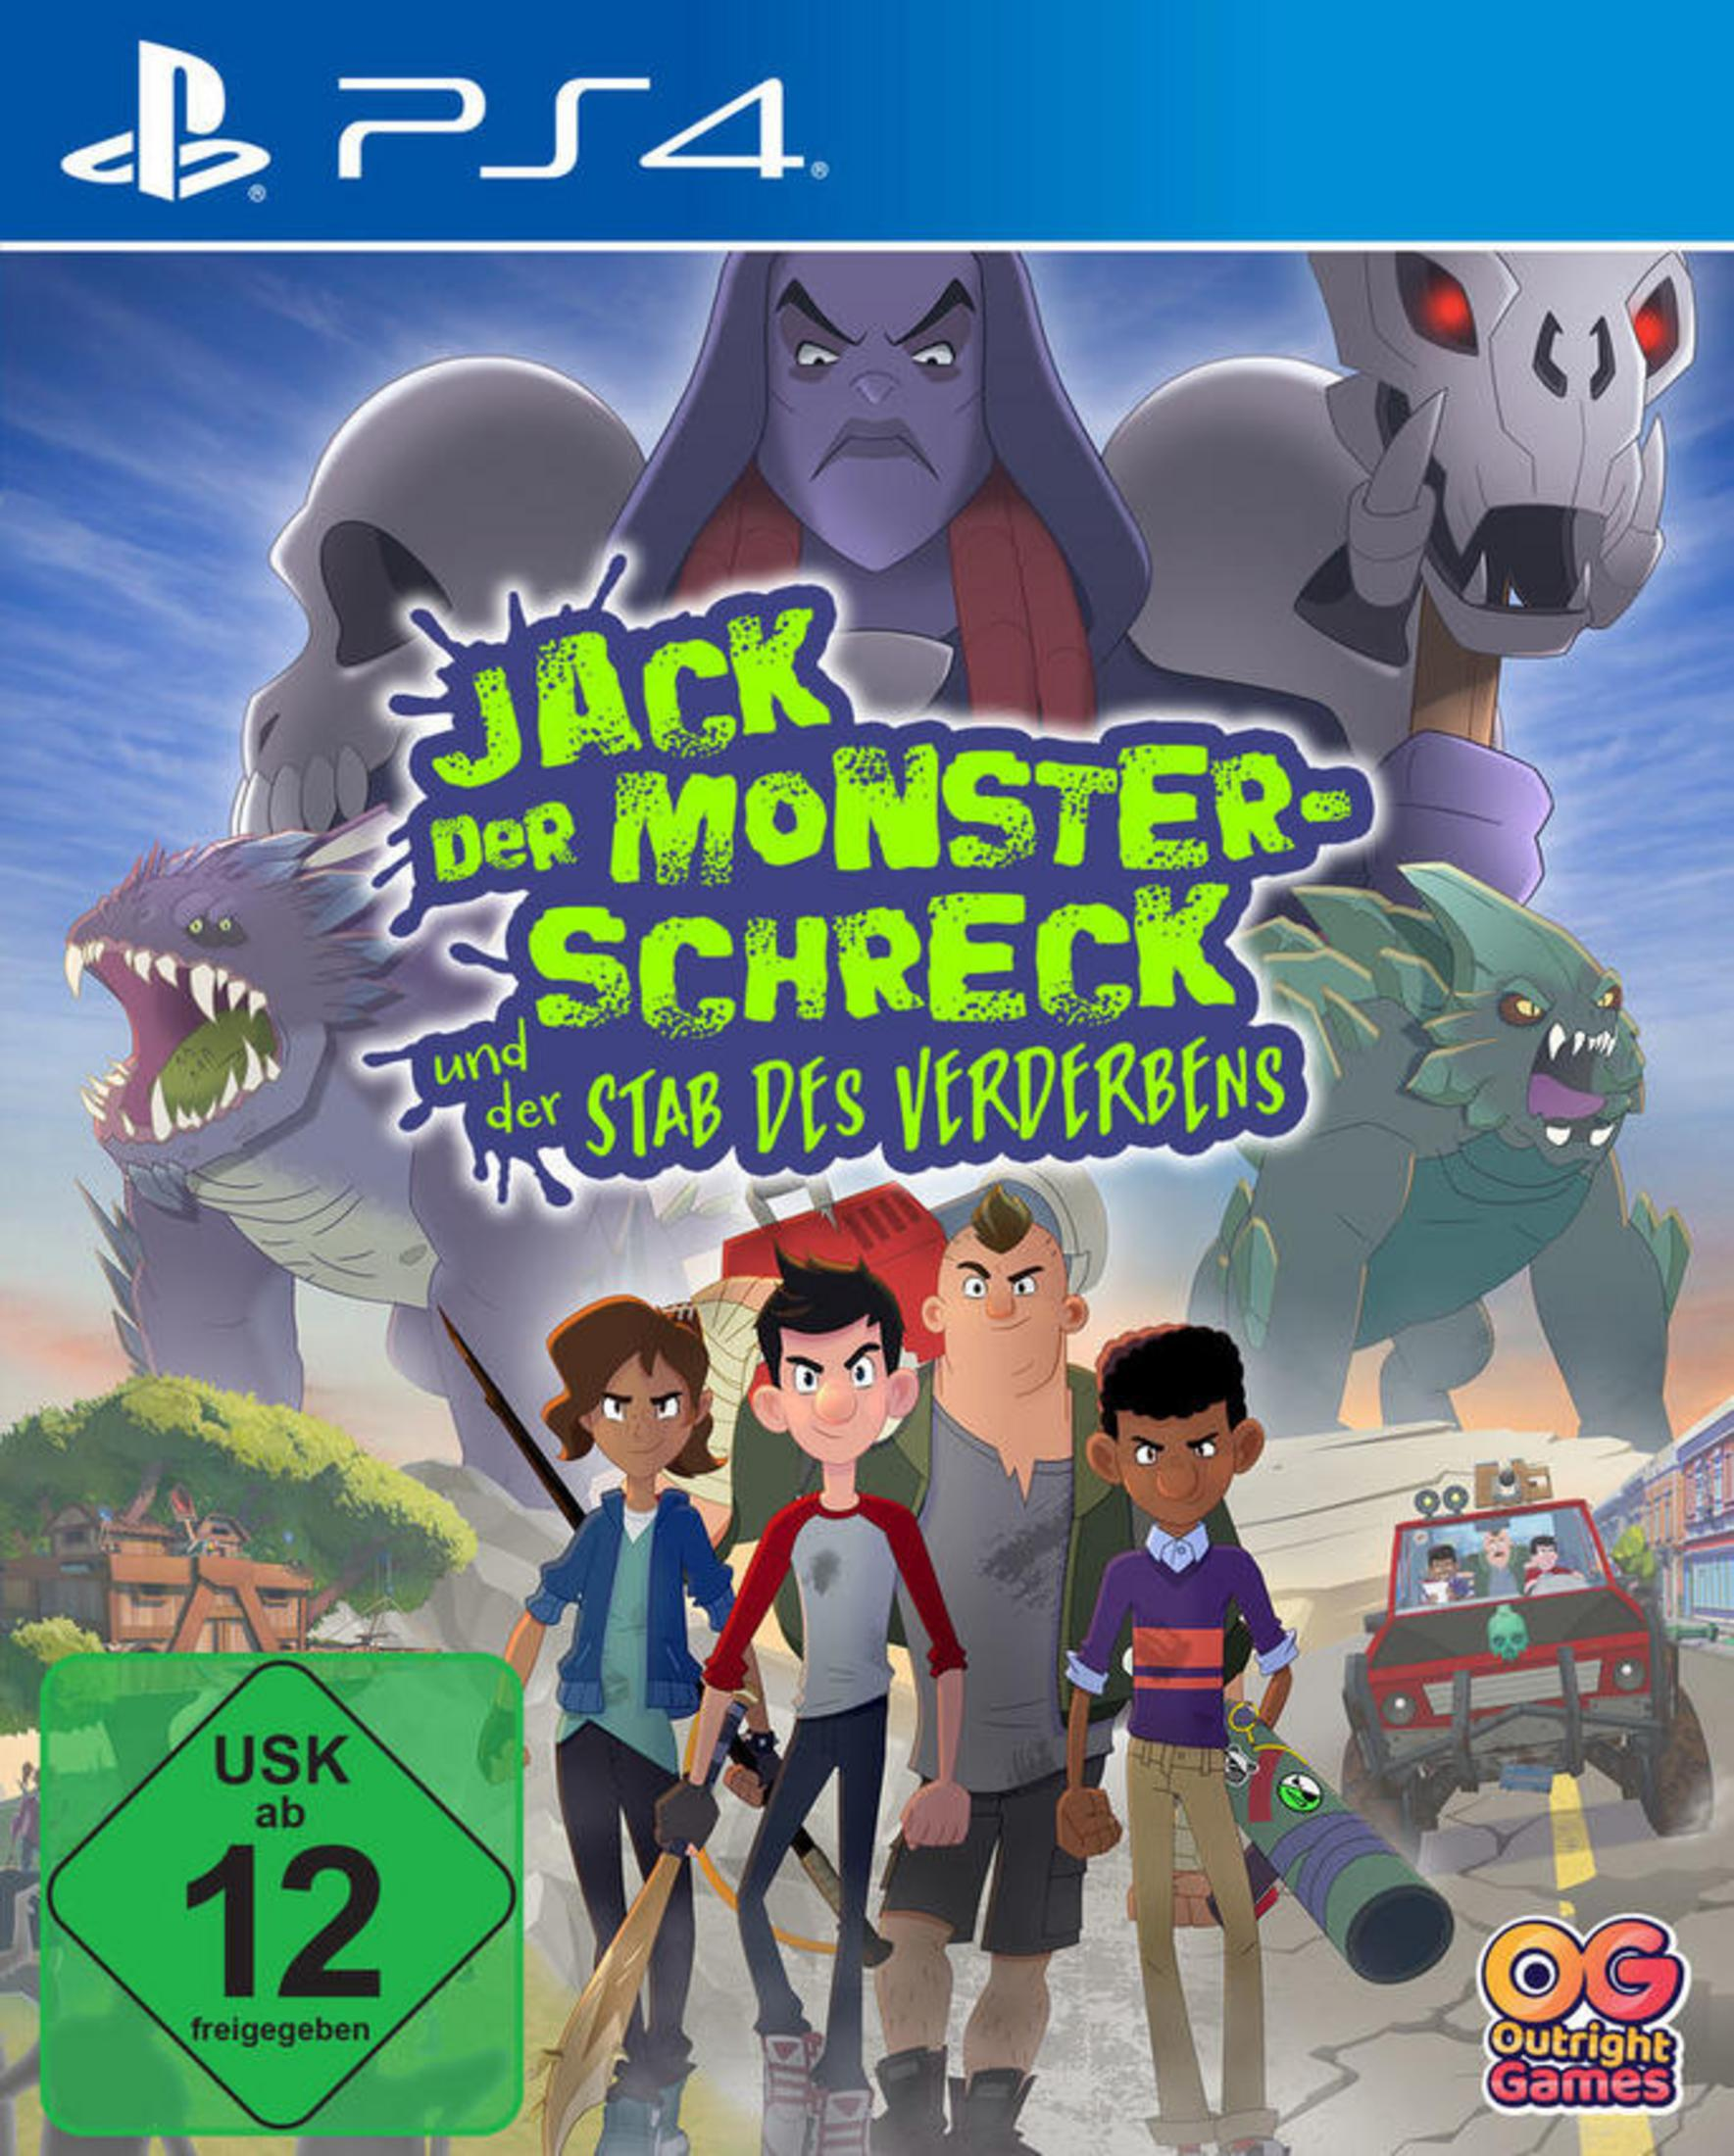 Kids Last 4] - [PlayStation der (The Earth) on Jack Monsterschreck